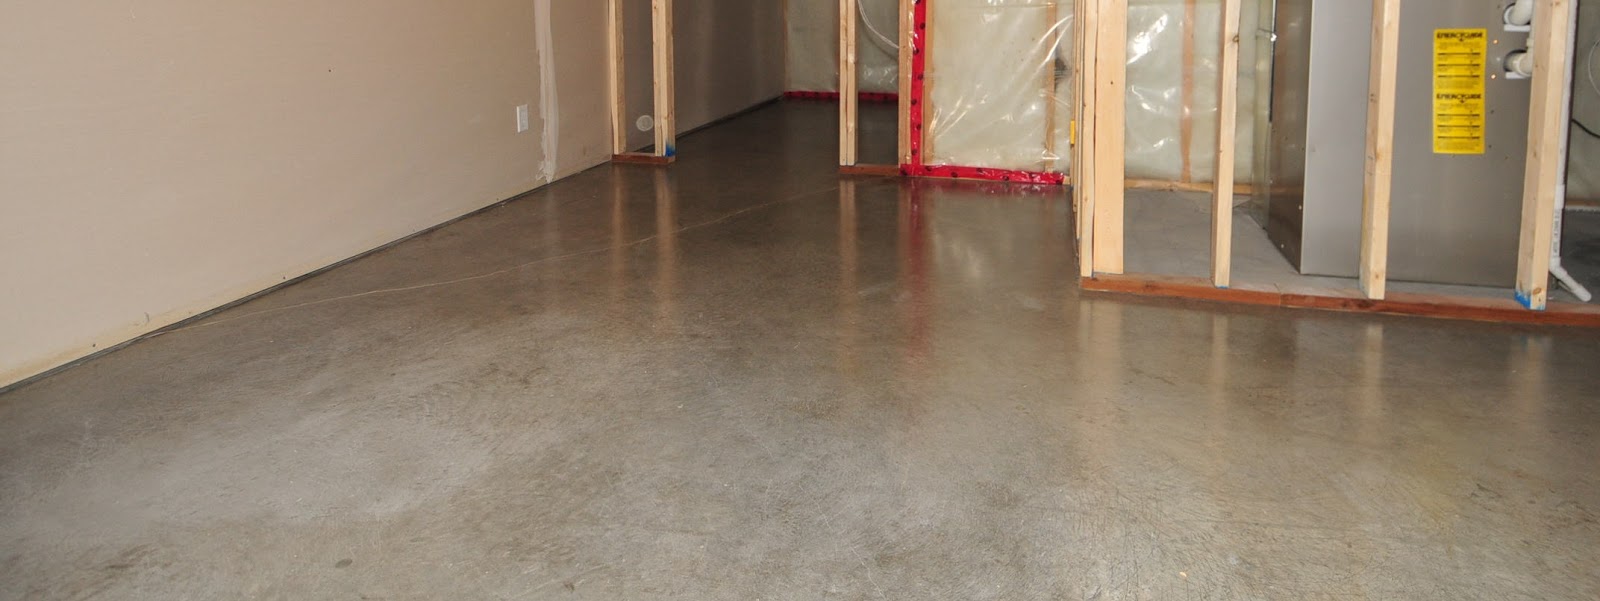 Basement concrete floor sealer reviews